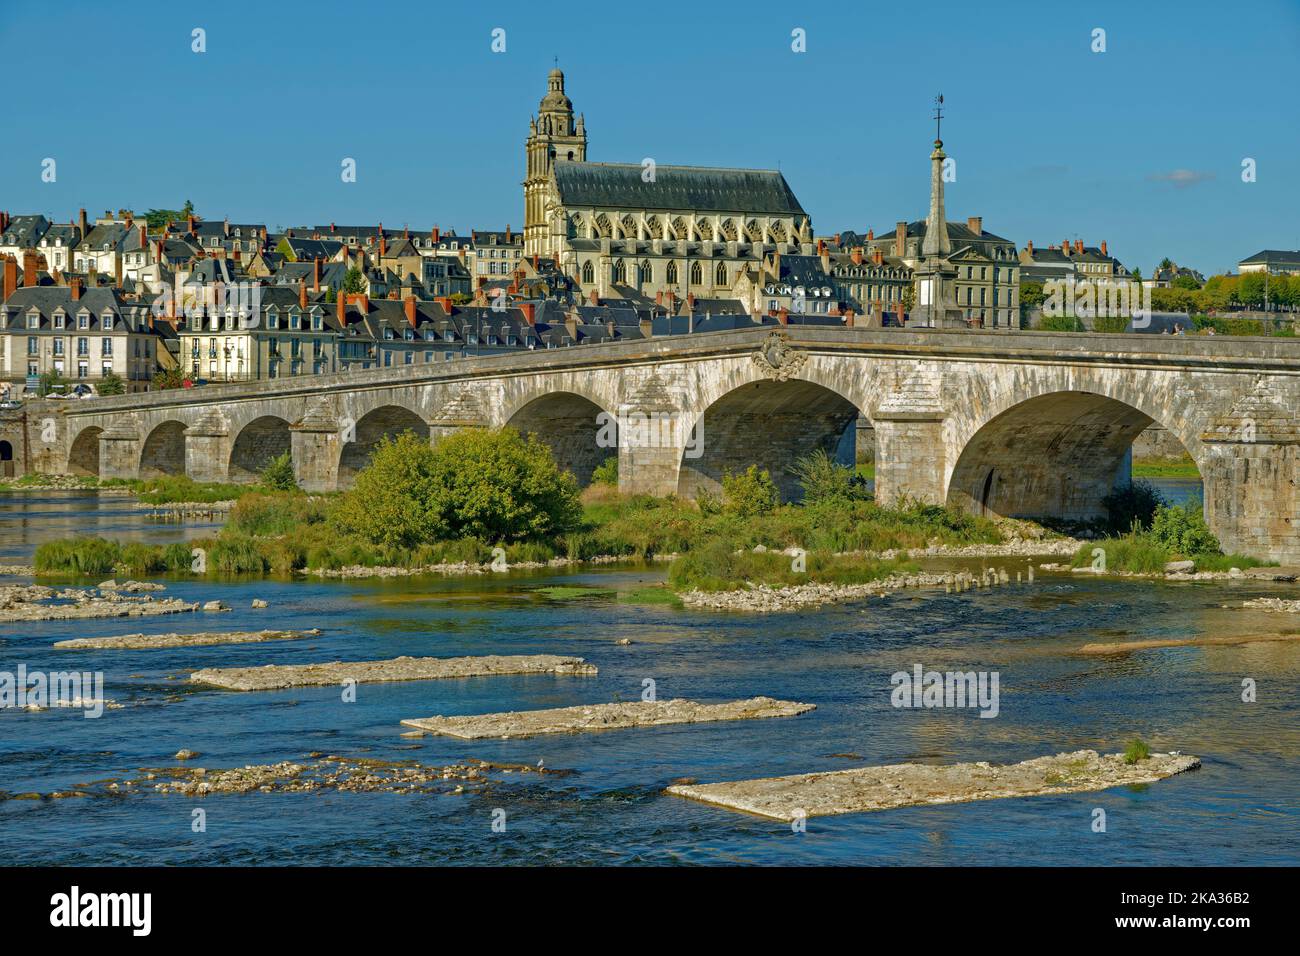 La ville de Blois sur la Loire, Loir-et-cher, France. Banque D'Images